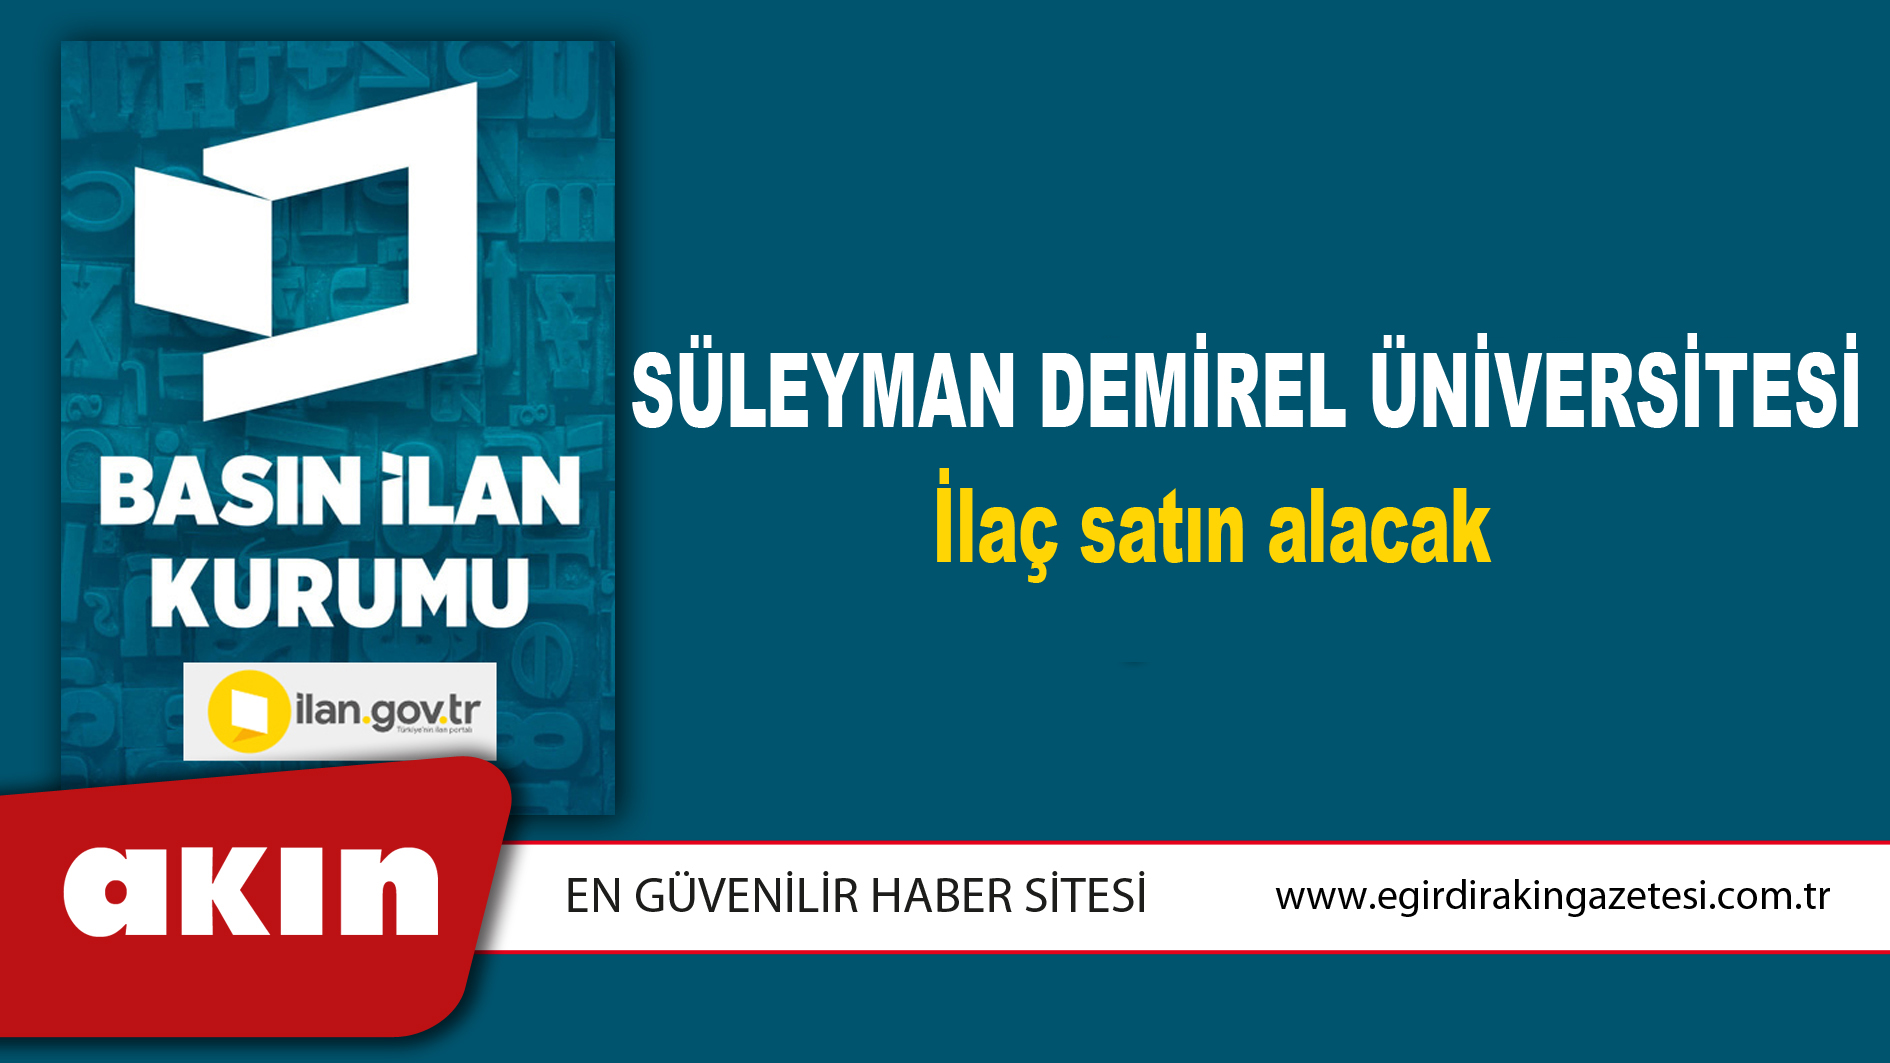 eğirdir haber,akın gazetesi,egirdir haberler,son dakika,Süleyman Demirel Üniversitesi İlaç satın alacak